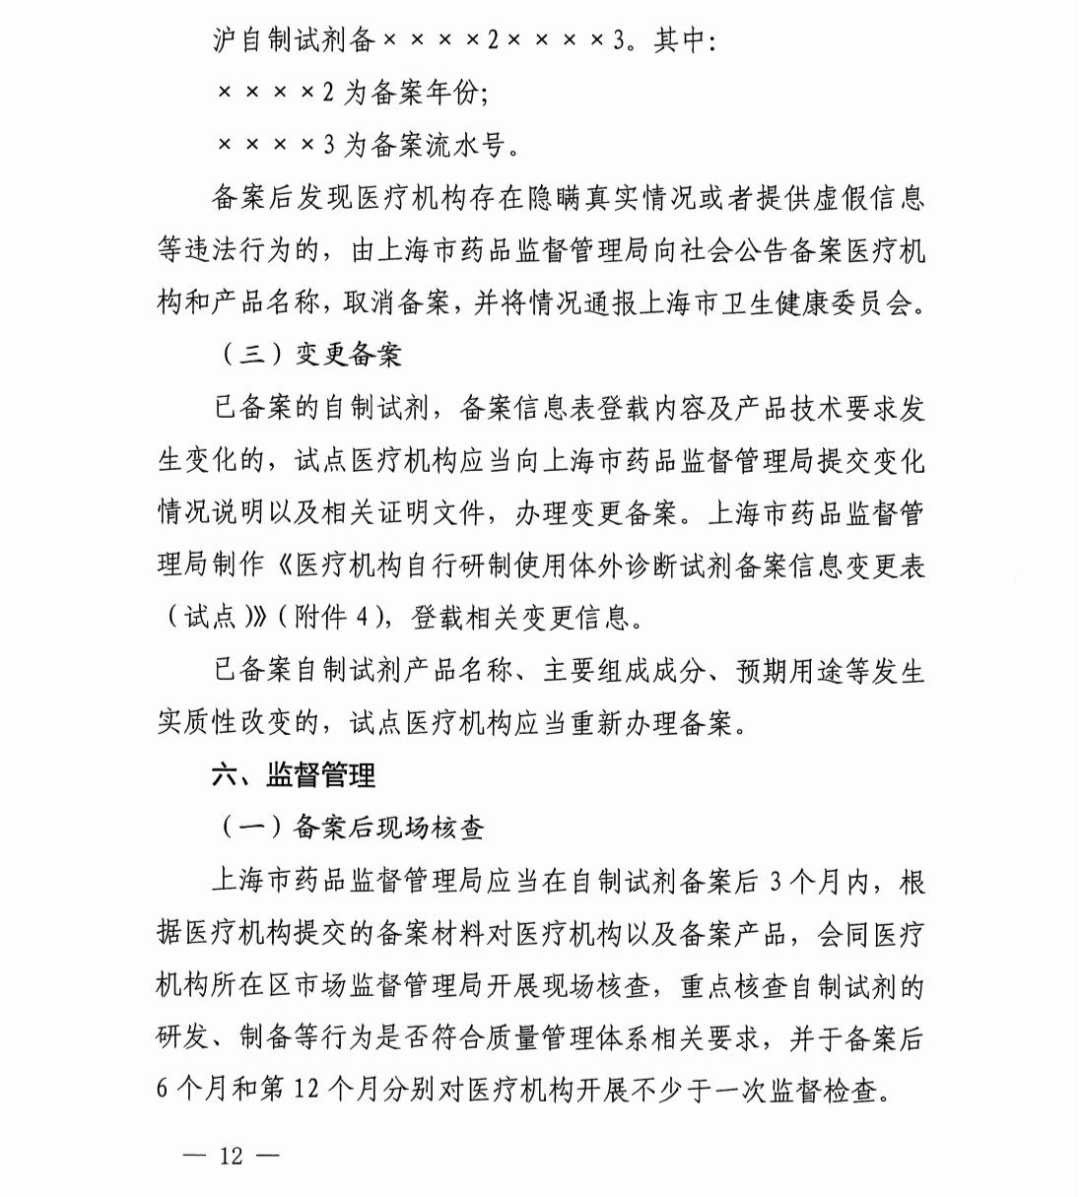 政策|上海市医疗机构自行研制使用体外诊断试剂试点实施方案